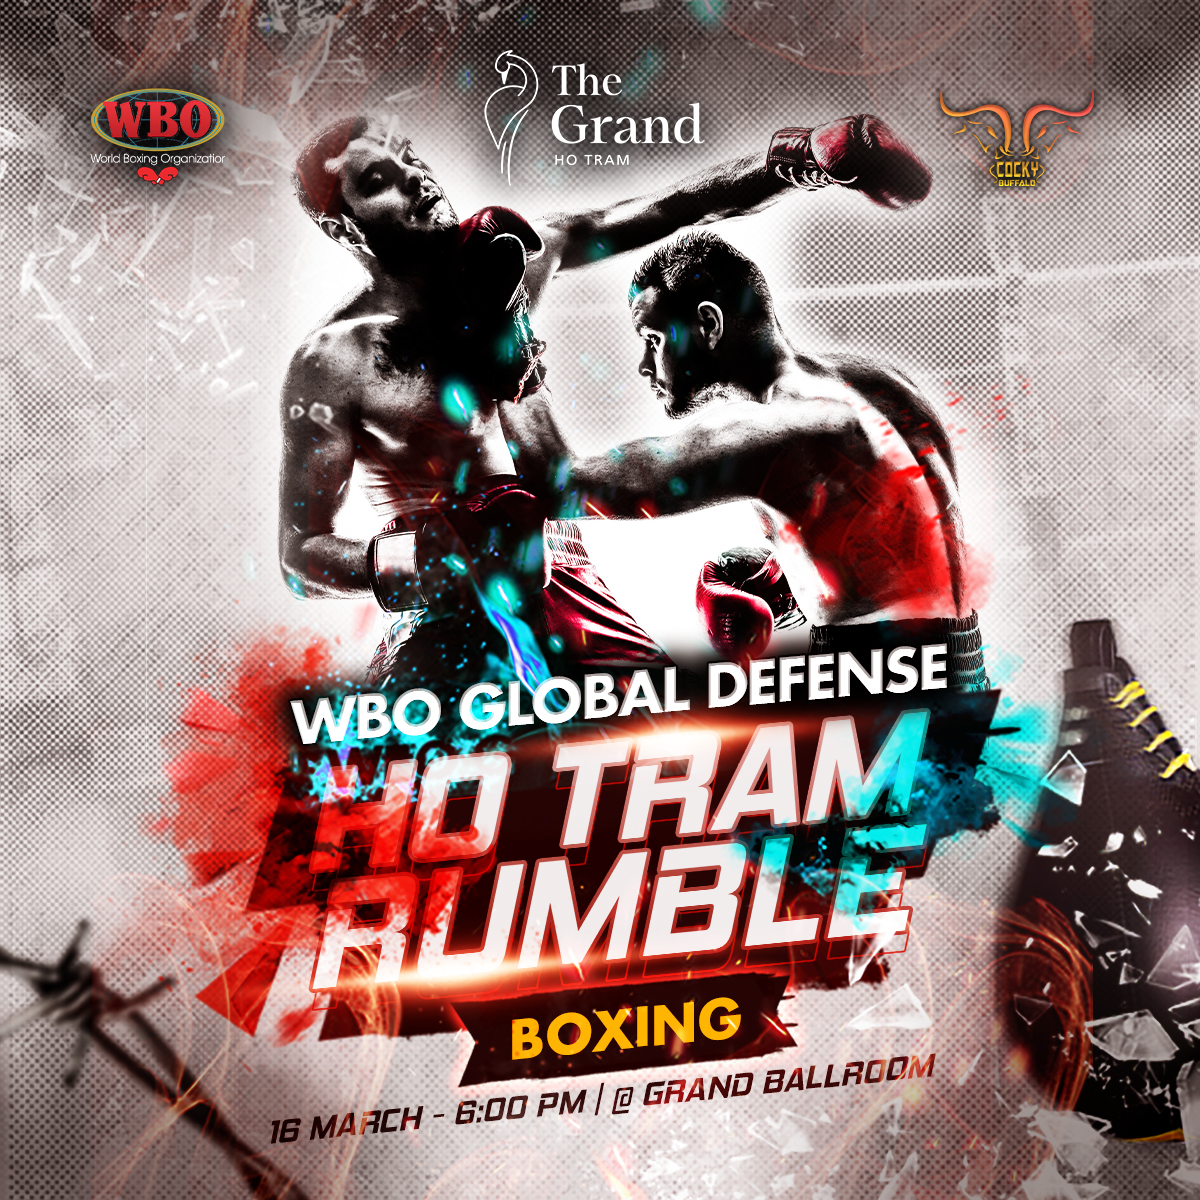 Sự kiện thi đấu quyền anh Quốc tế “WBO Global Defense match” quy tụ nhiều võ sĩ tên tuổi trong và ngoài nước tham dự.